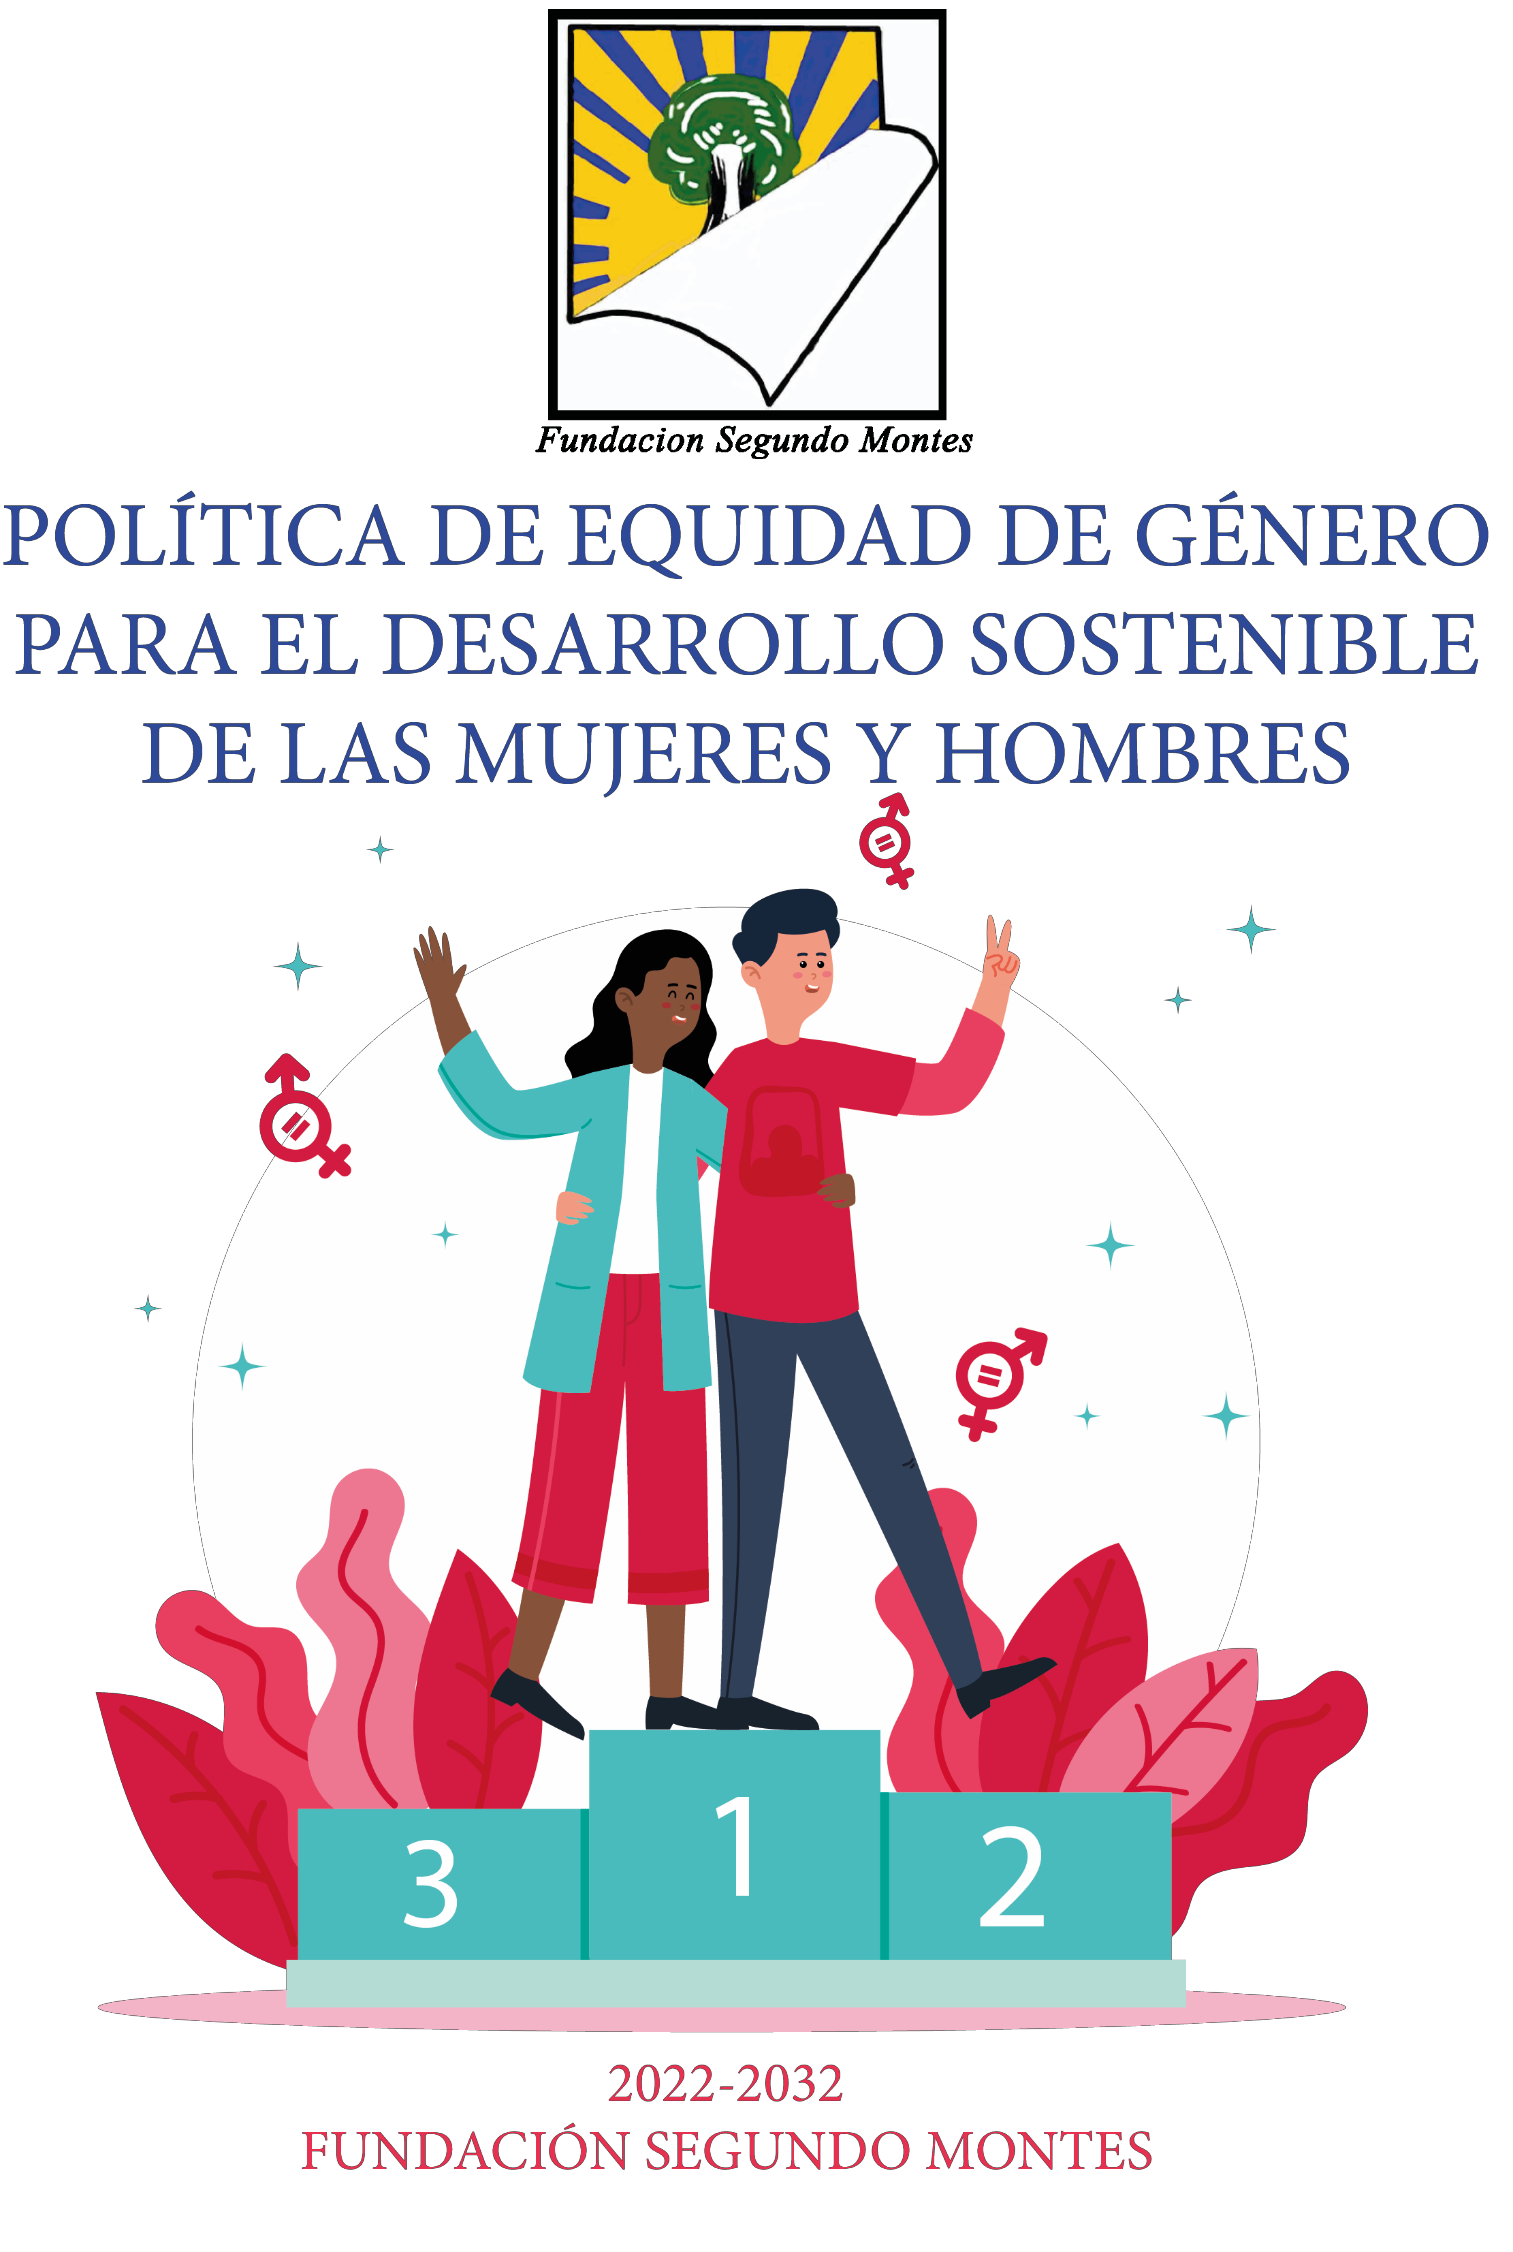 POLITICA DE EQUIDAD DE GENERO DE FSM_page1_image1